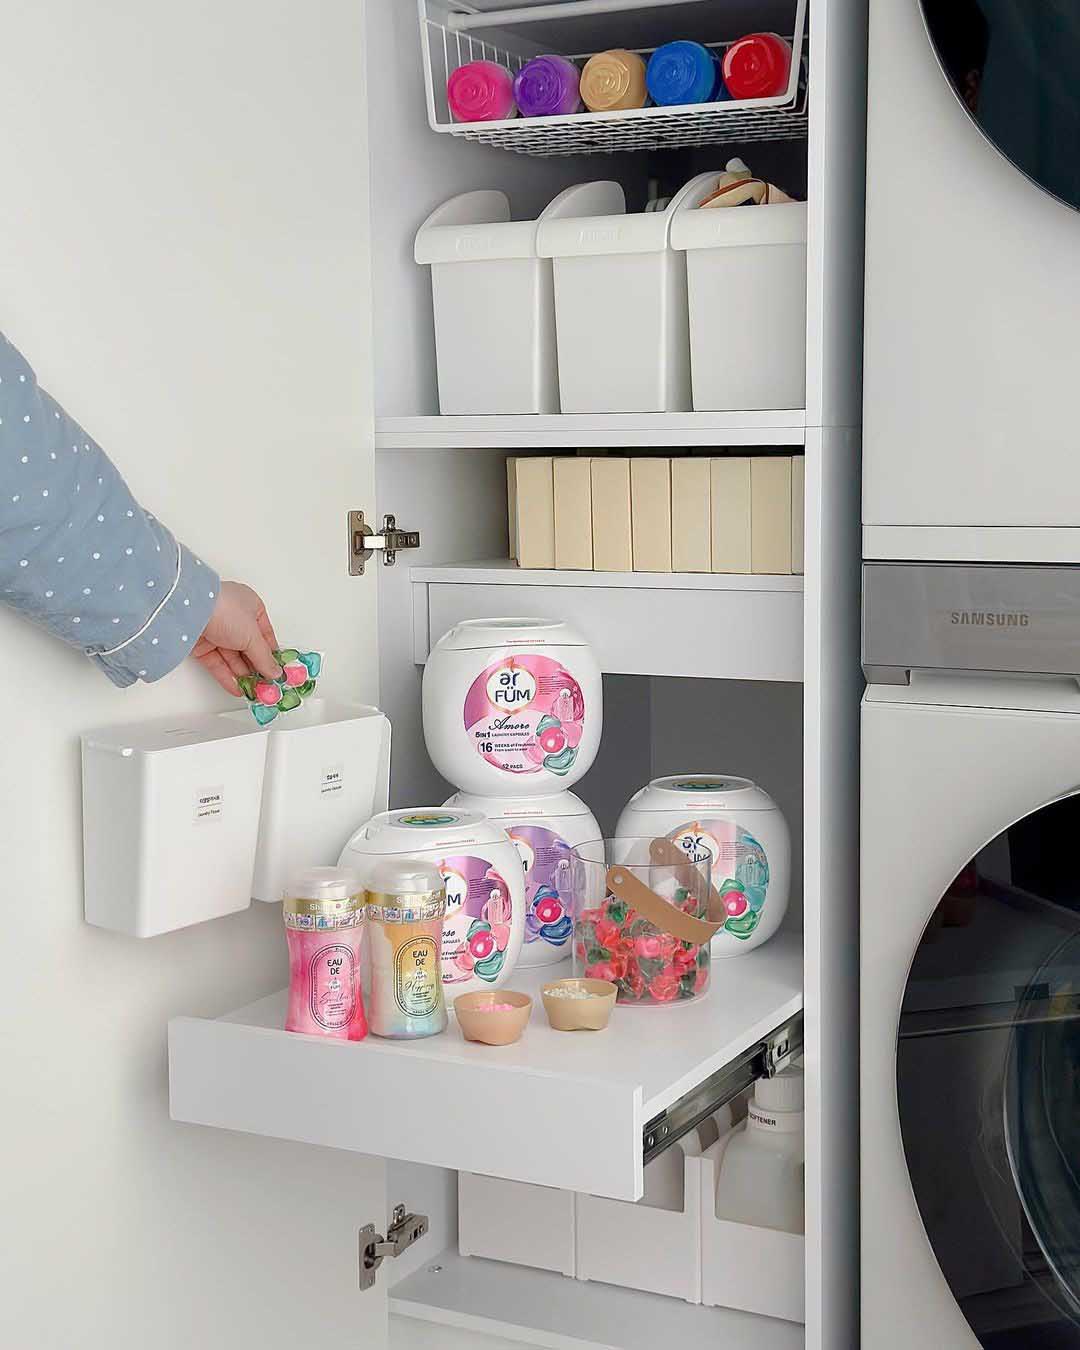 Phòng giặt 3㎡ được mẹ đảm ở Hàn Quốc sắp xếp lại vô cùng tinh tế - Ảnh 11.